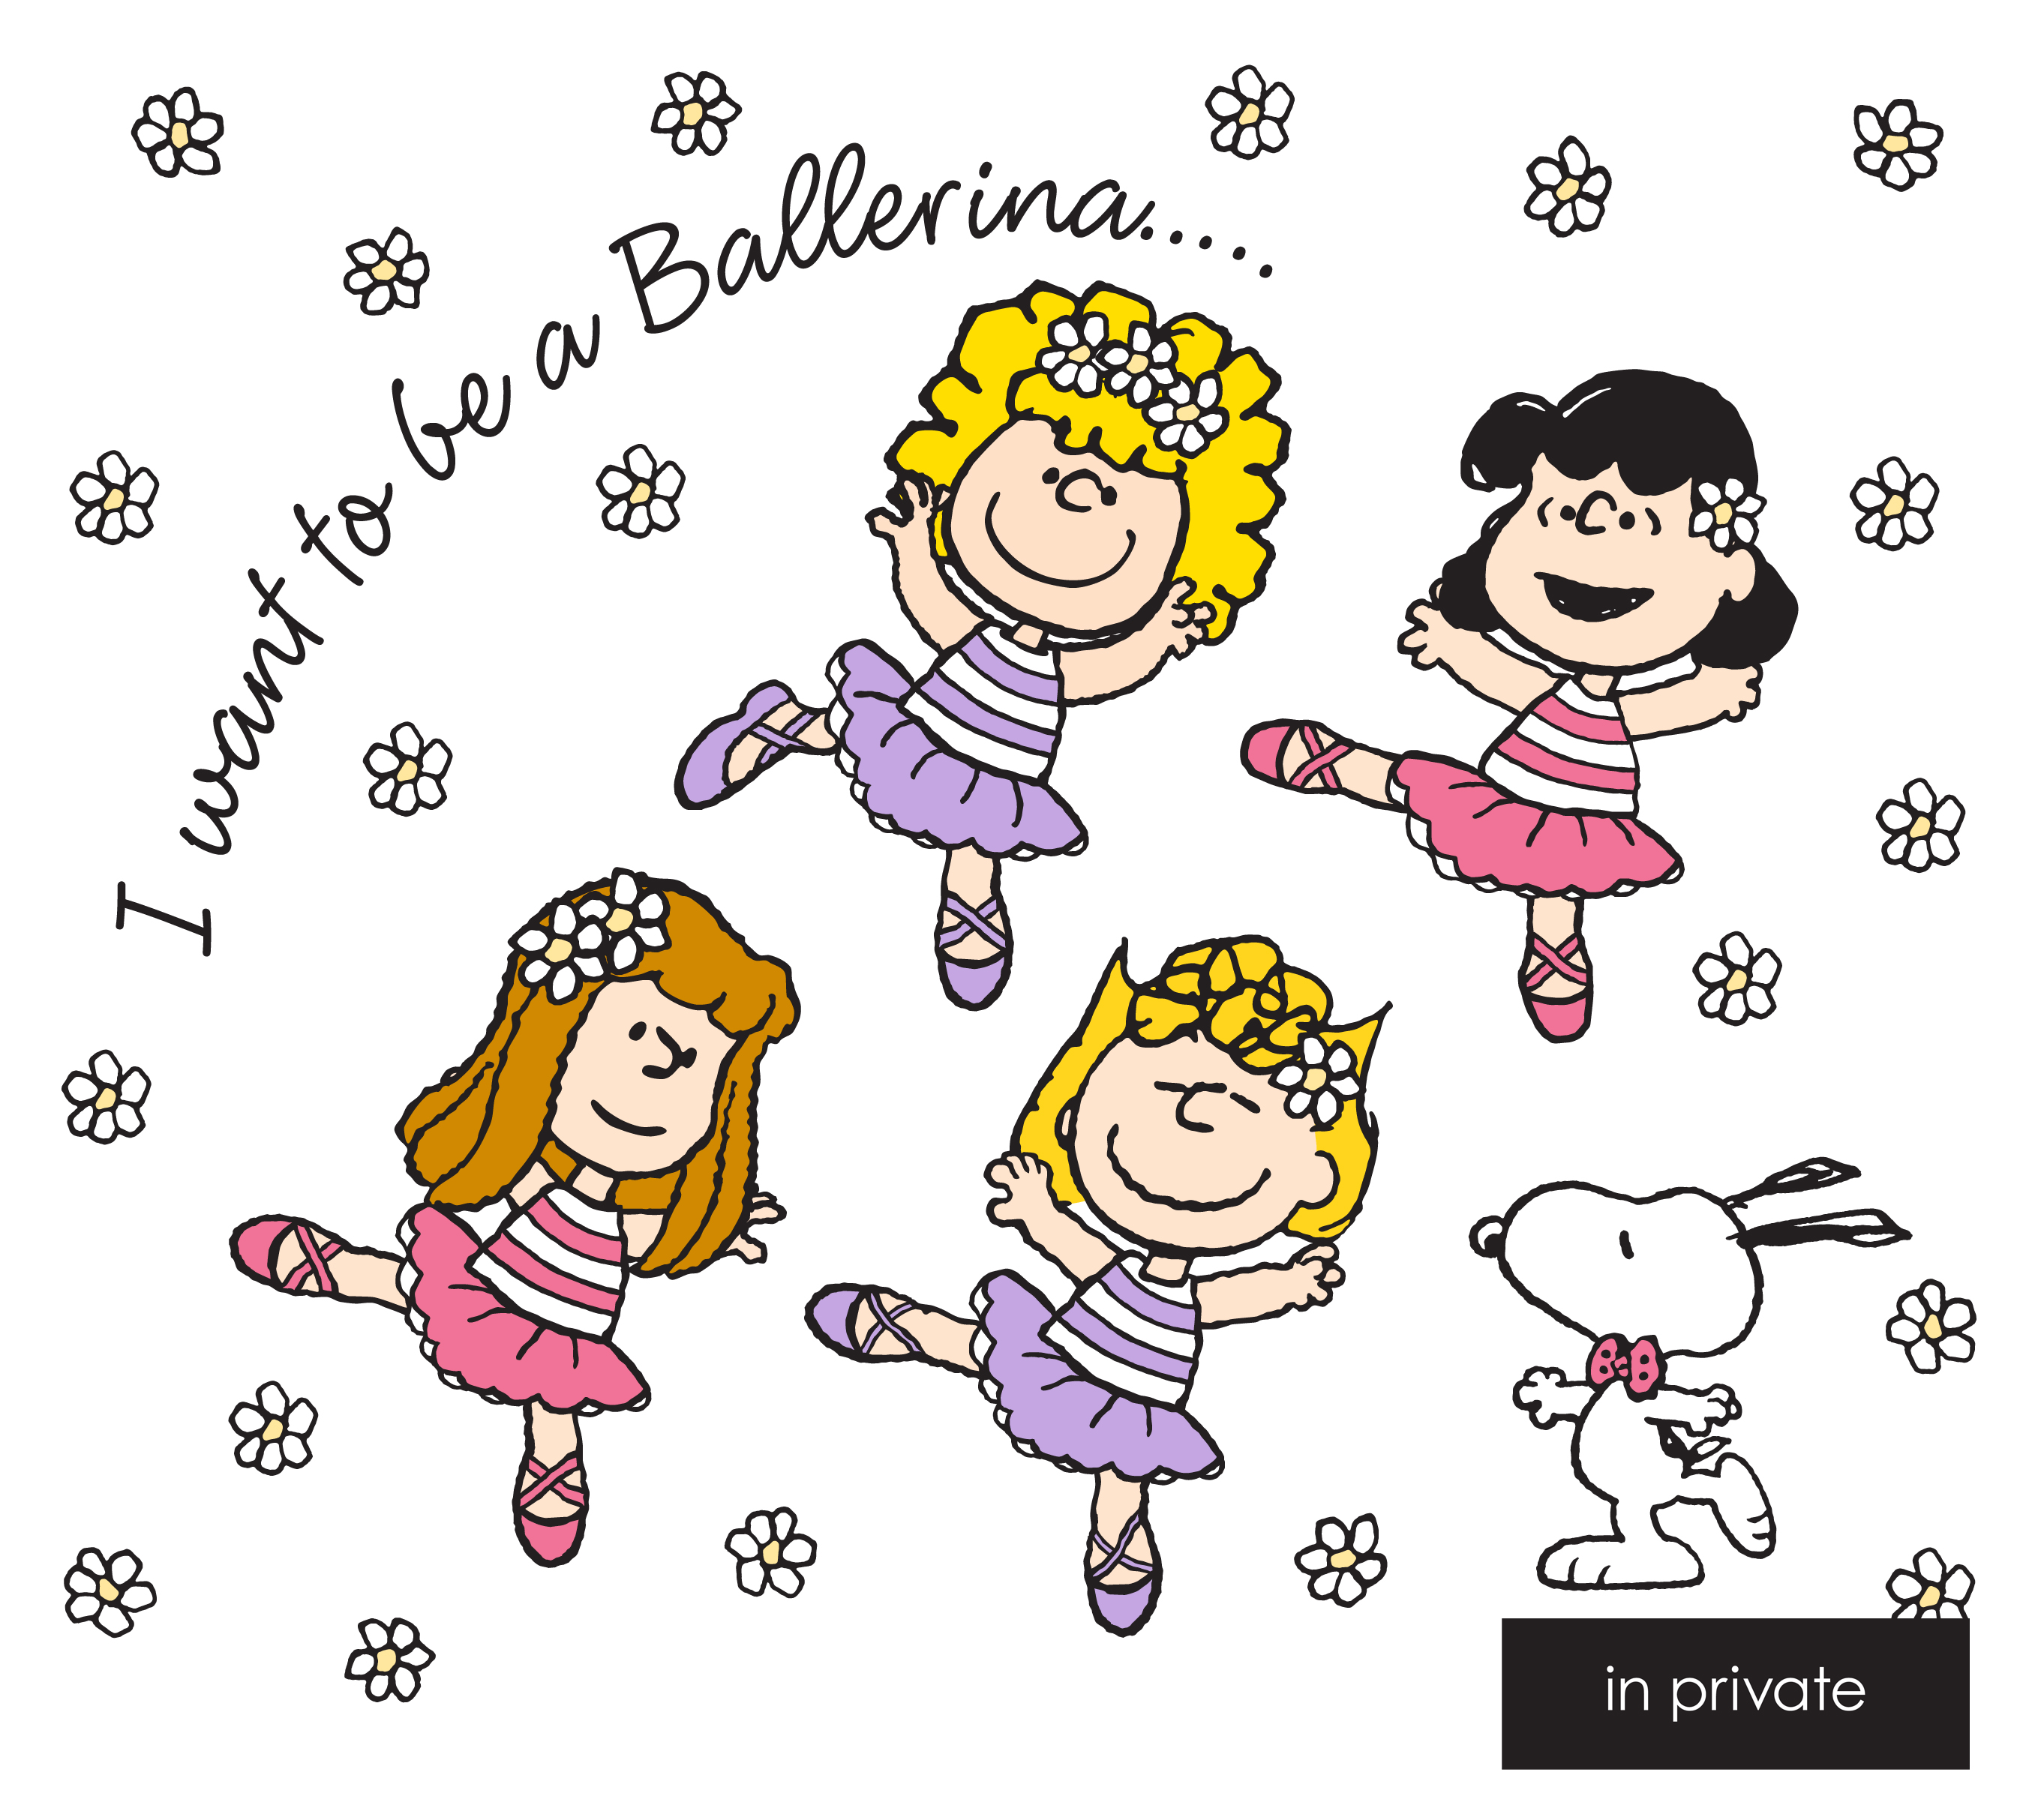 4人の女の子たちが元気いっぱいのバレリーナに In Private Peanuts のコラボレーションアイテム発売 プラザ スタイルのプレスリリース